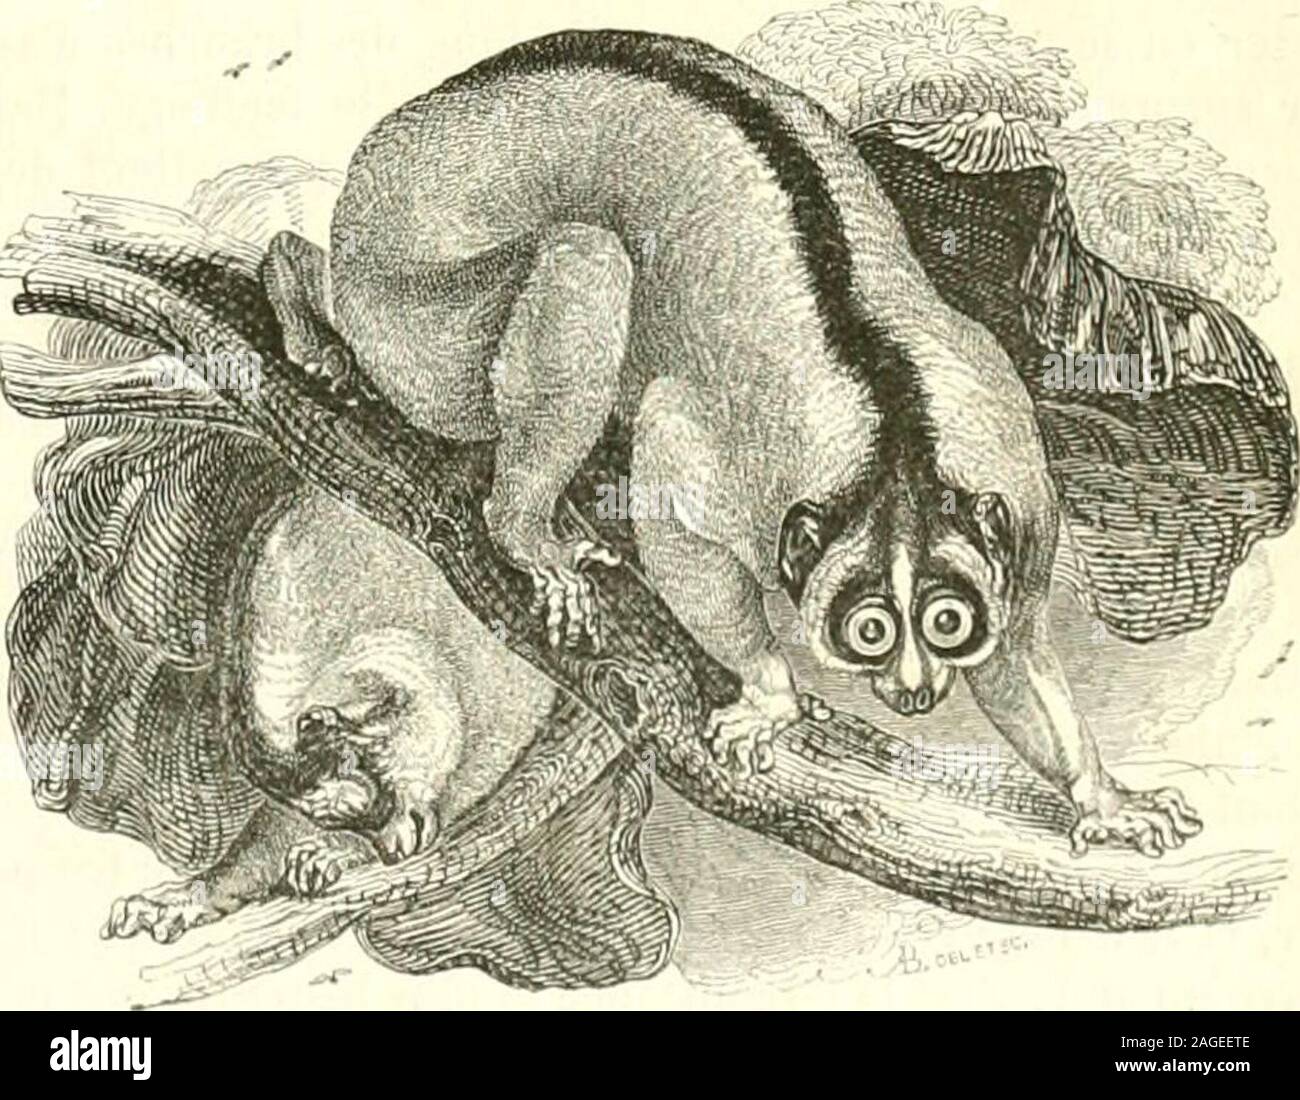 . Le Jardin des plantes : description. brestrès-grêles, avec le tibia ou os de la jambe plus long que los dela cuisse ou fémur; ils ont quatre mamelons, mais provenant dedeux glandes manmiaires seulement. Leurs oreilles sont courteset velues. , Le Loris (Loris gracilis, Geoff. Lemur gracilis. G. Cuv. Tar-difjradus. Sera. Le Loris, Iîuff. Le Loris grêle, G. Cuv. — Variété:Loris ceyionicus, Fiscu.) a le pelage roussàtre ou dun gris fauve,sans raie brune sur le dos; son poil est très-fin et très-doux. Sonnez est un peu relevé par une saillie des intermaxillaires, et il aune tache blanche sur le f Stock Photo